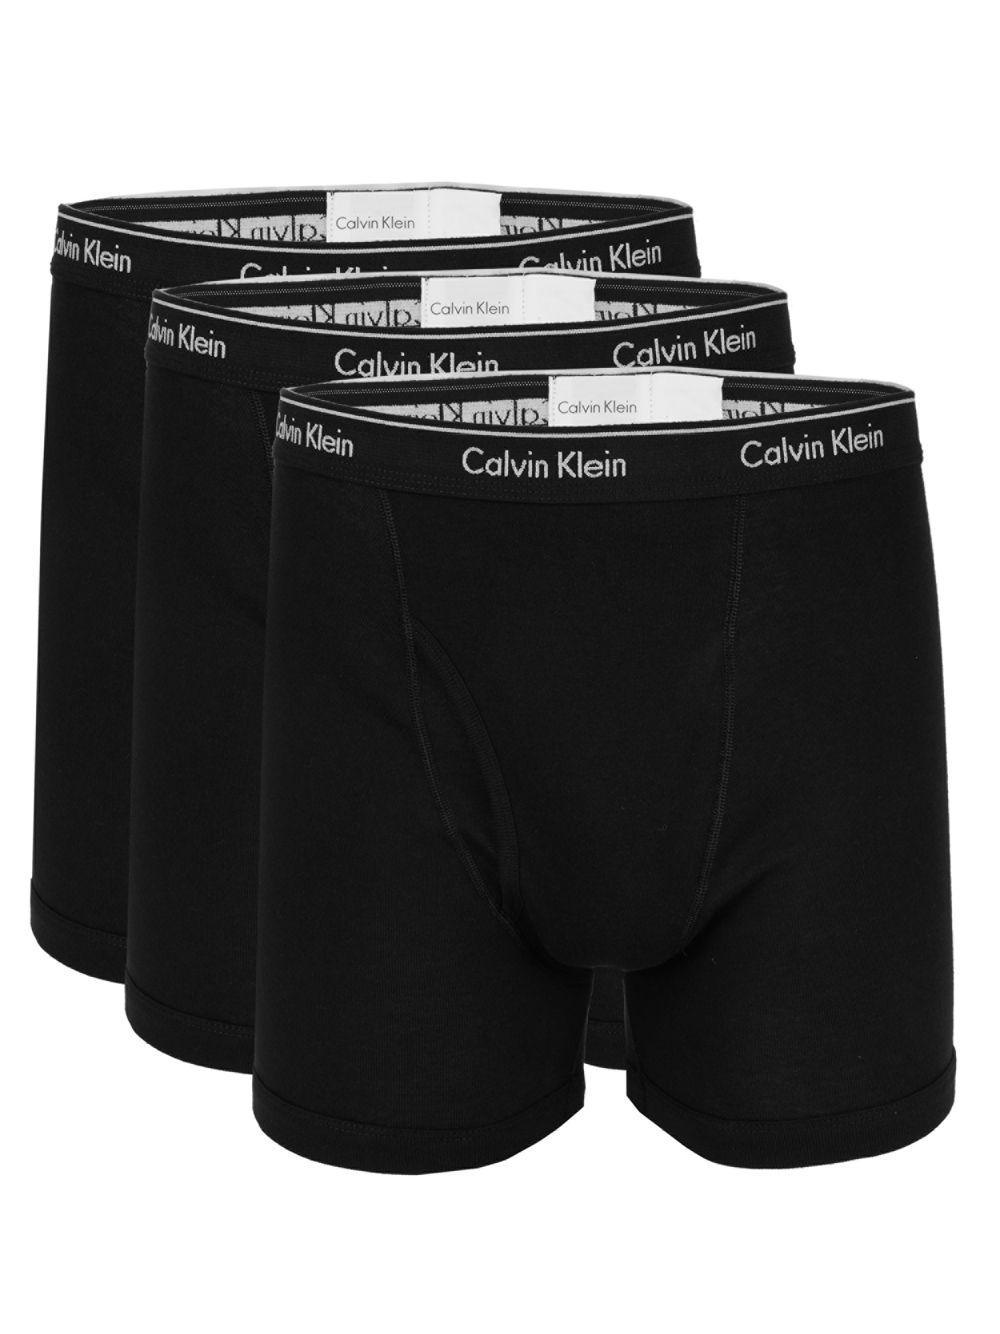 3 pack of calvin klein boxer briefs